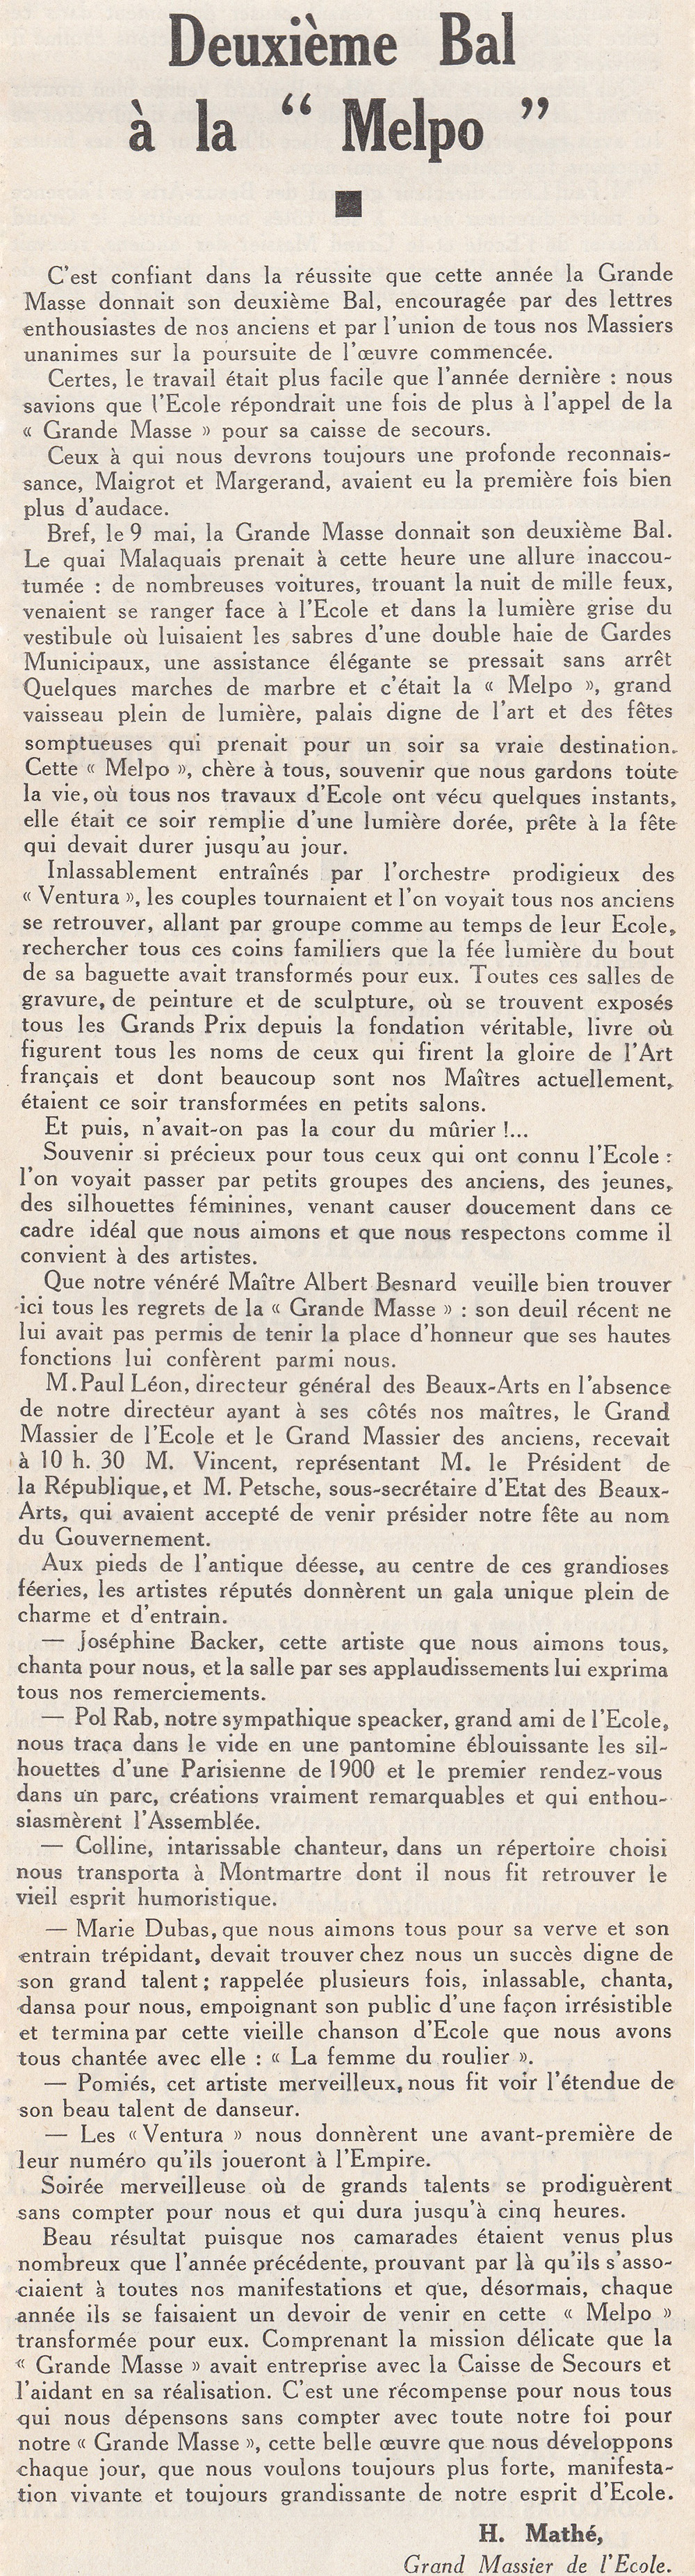 193107_Bulletin-GMBA_Compte-rendu-Bal.jpg